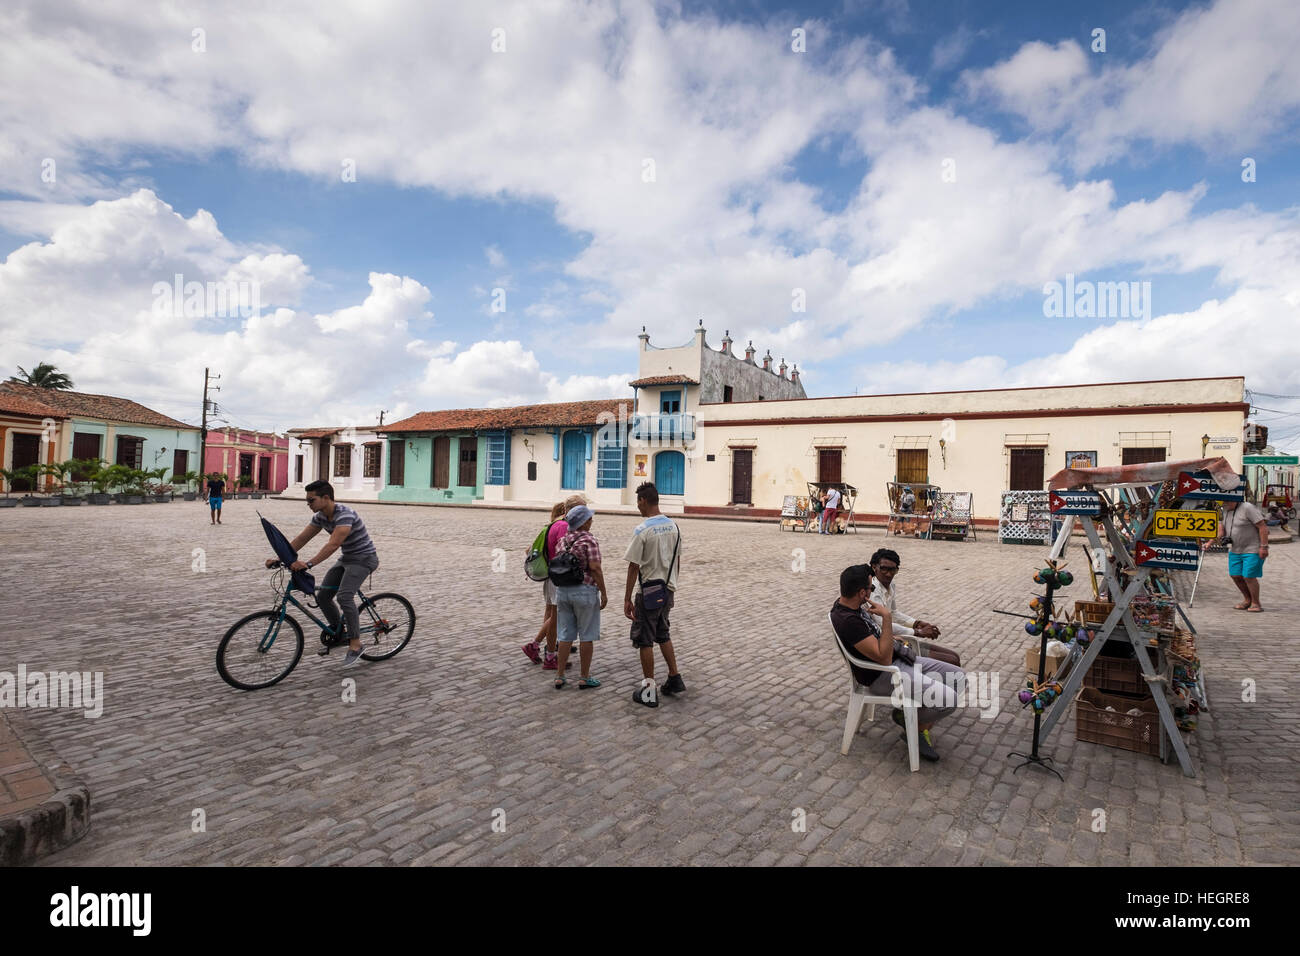 Plaza de San Juan de Dios con puestos de artesanía y turistas, Camagüey, Cuba Foto de stock